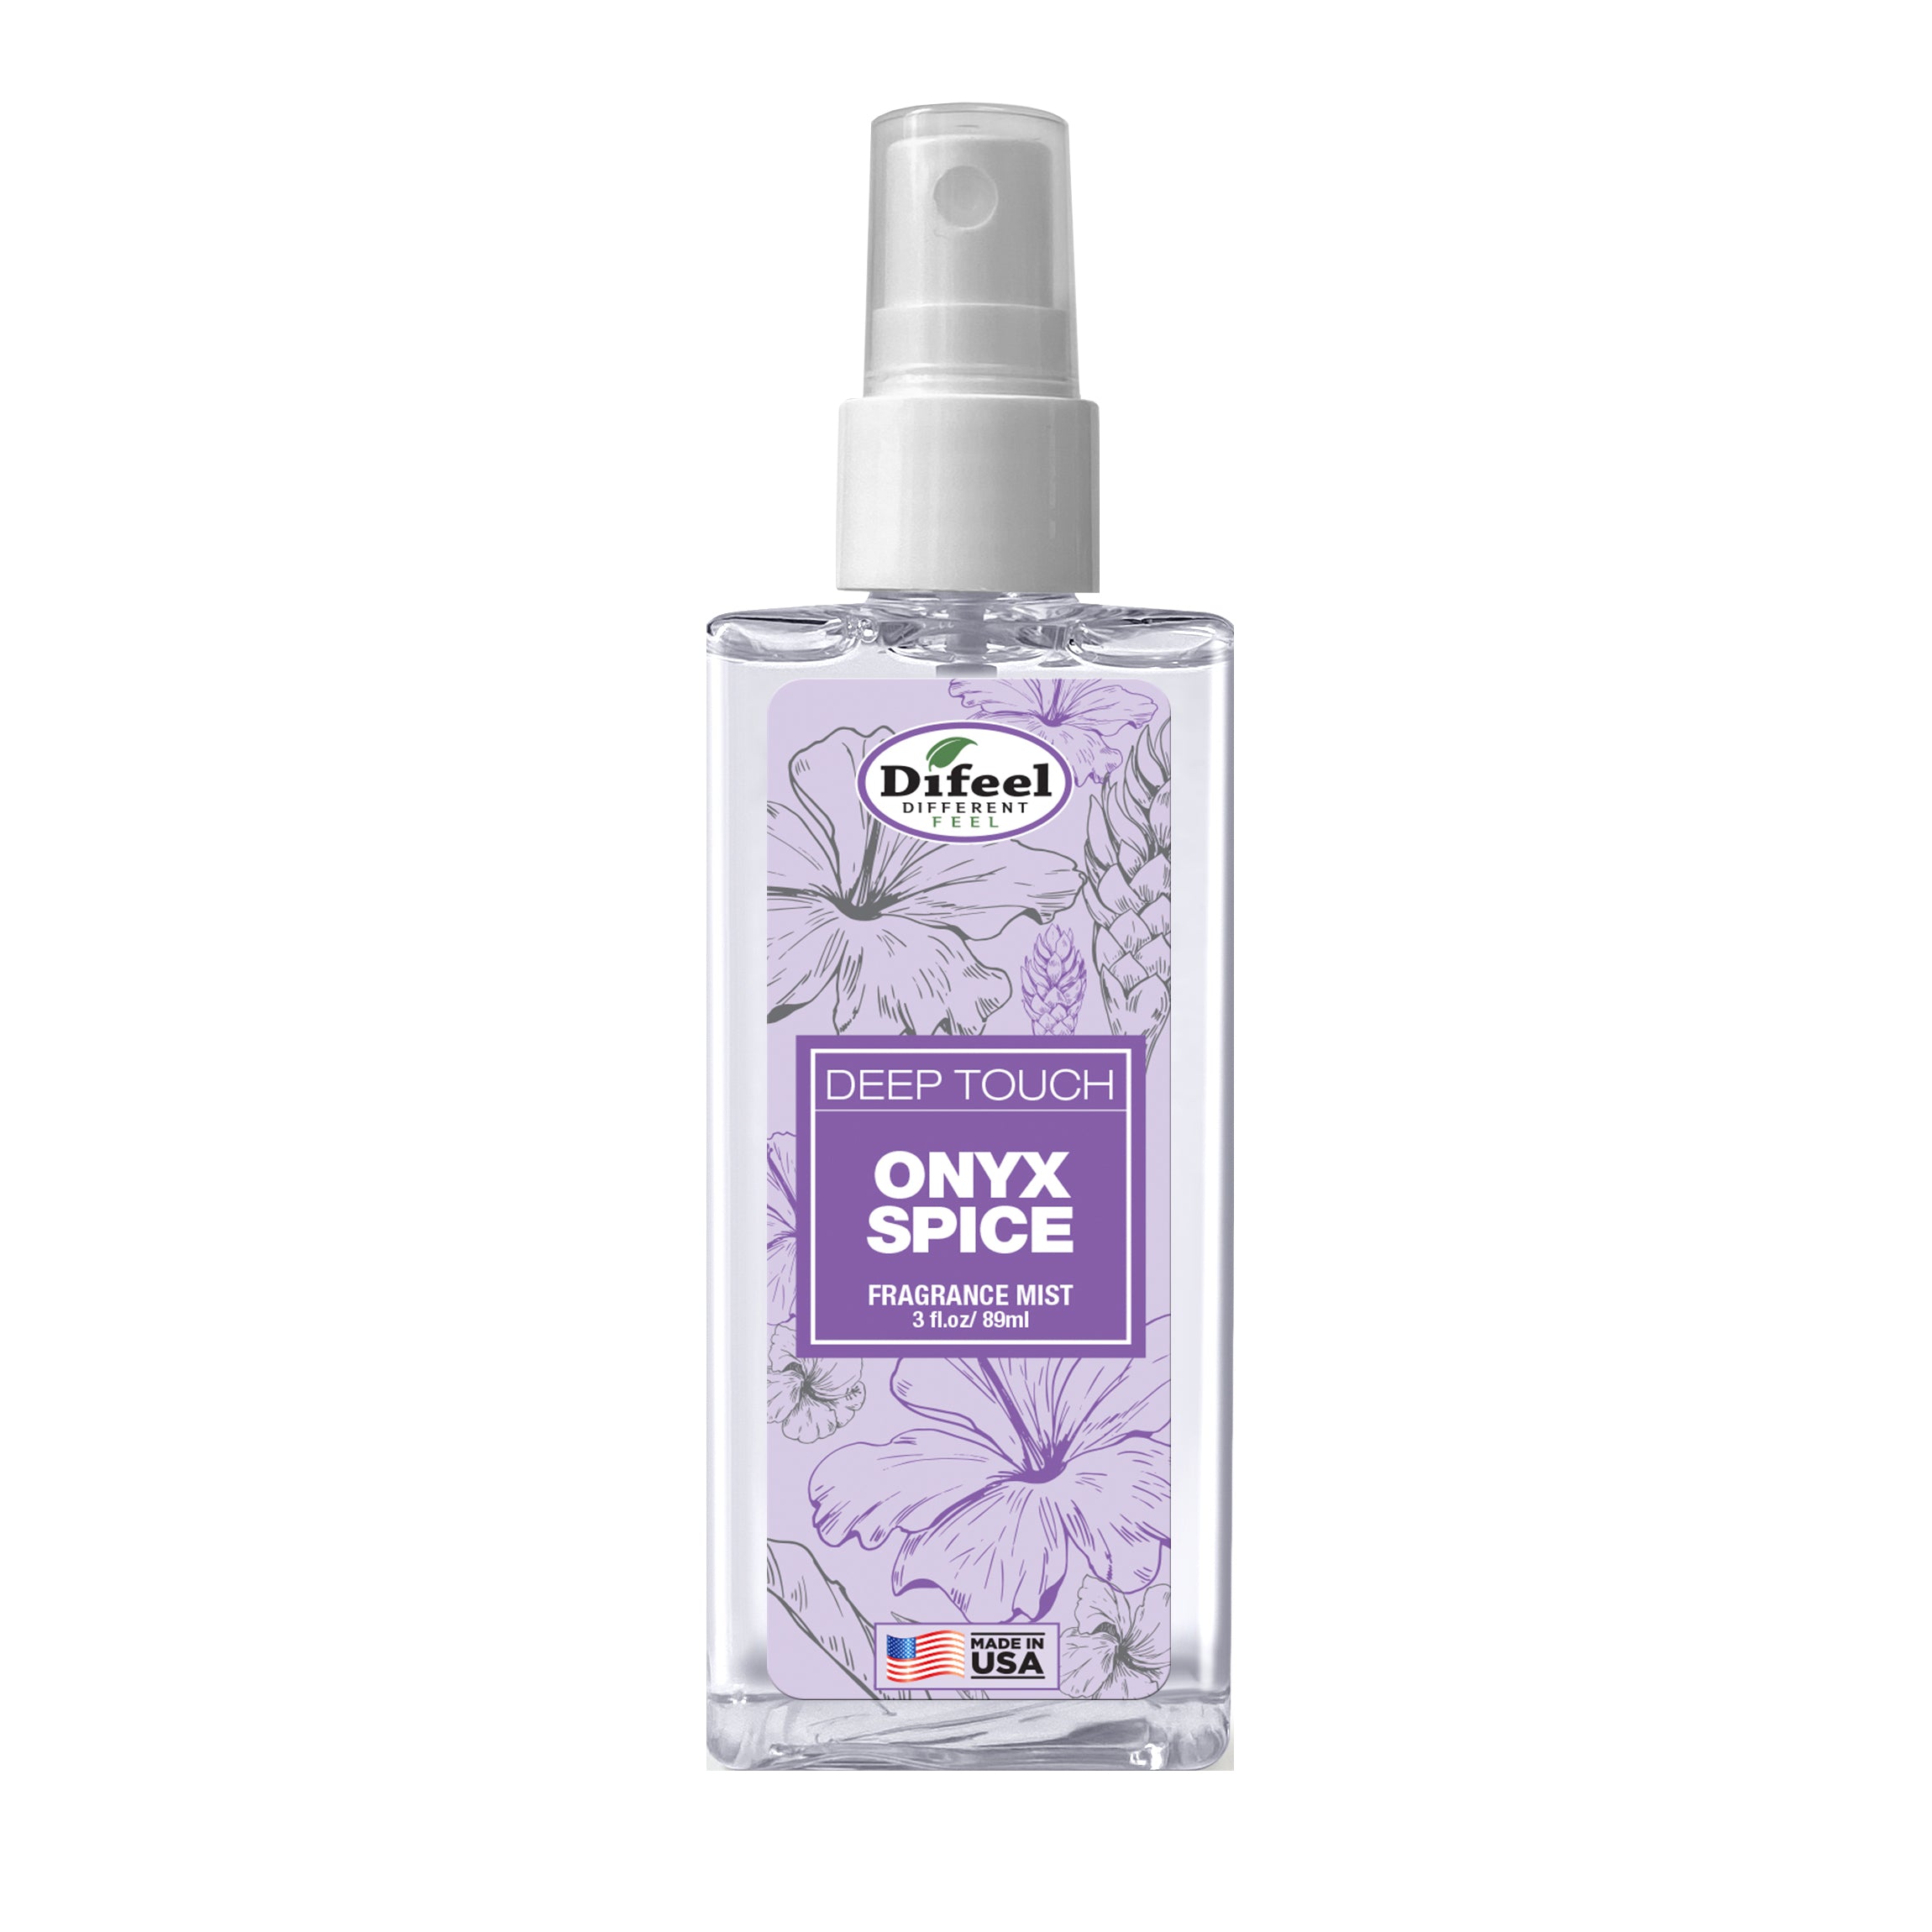 Deep Touch Body Mist Spray - Onyx Spice 3 Ounces